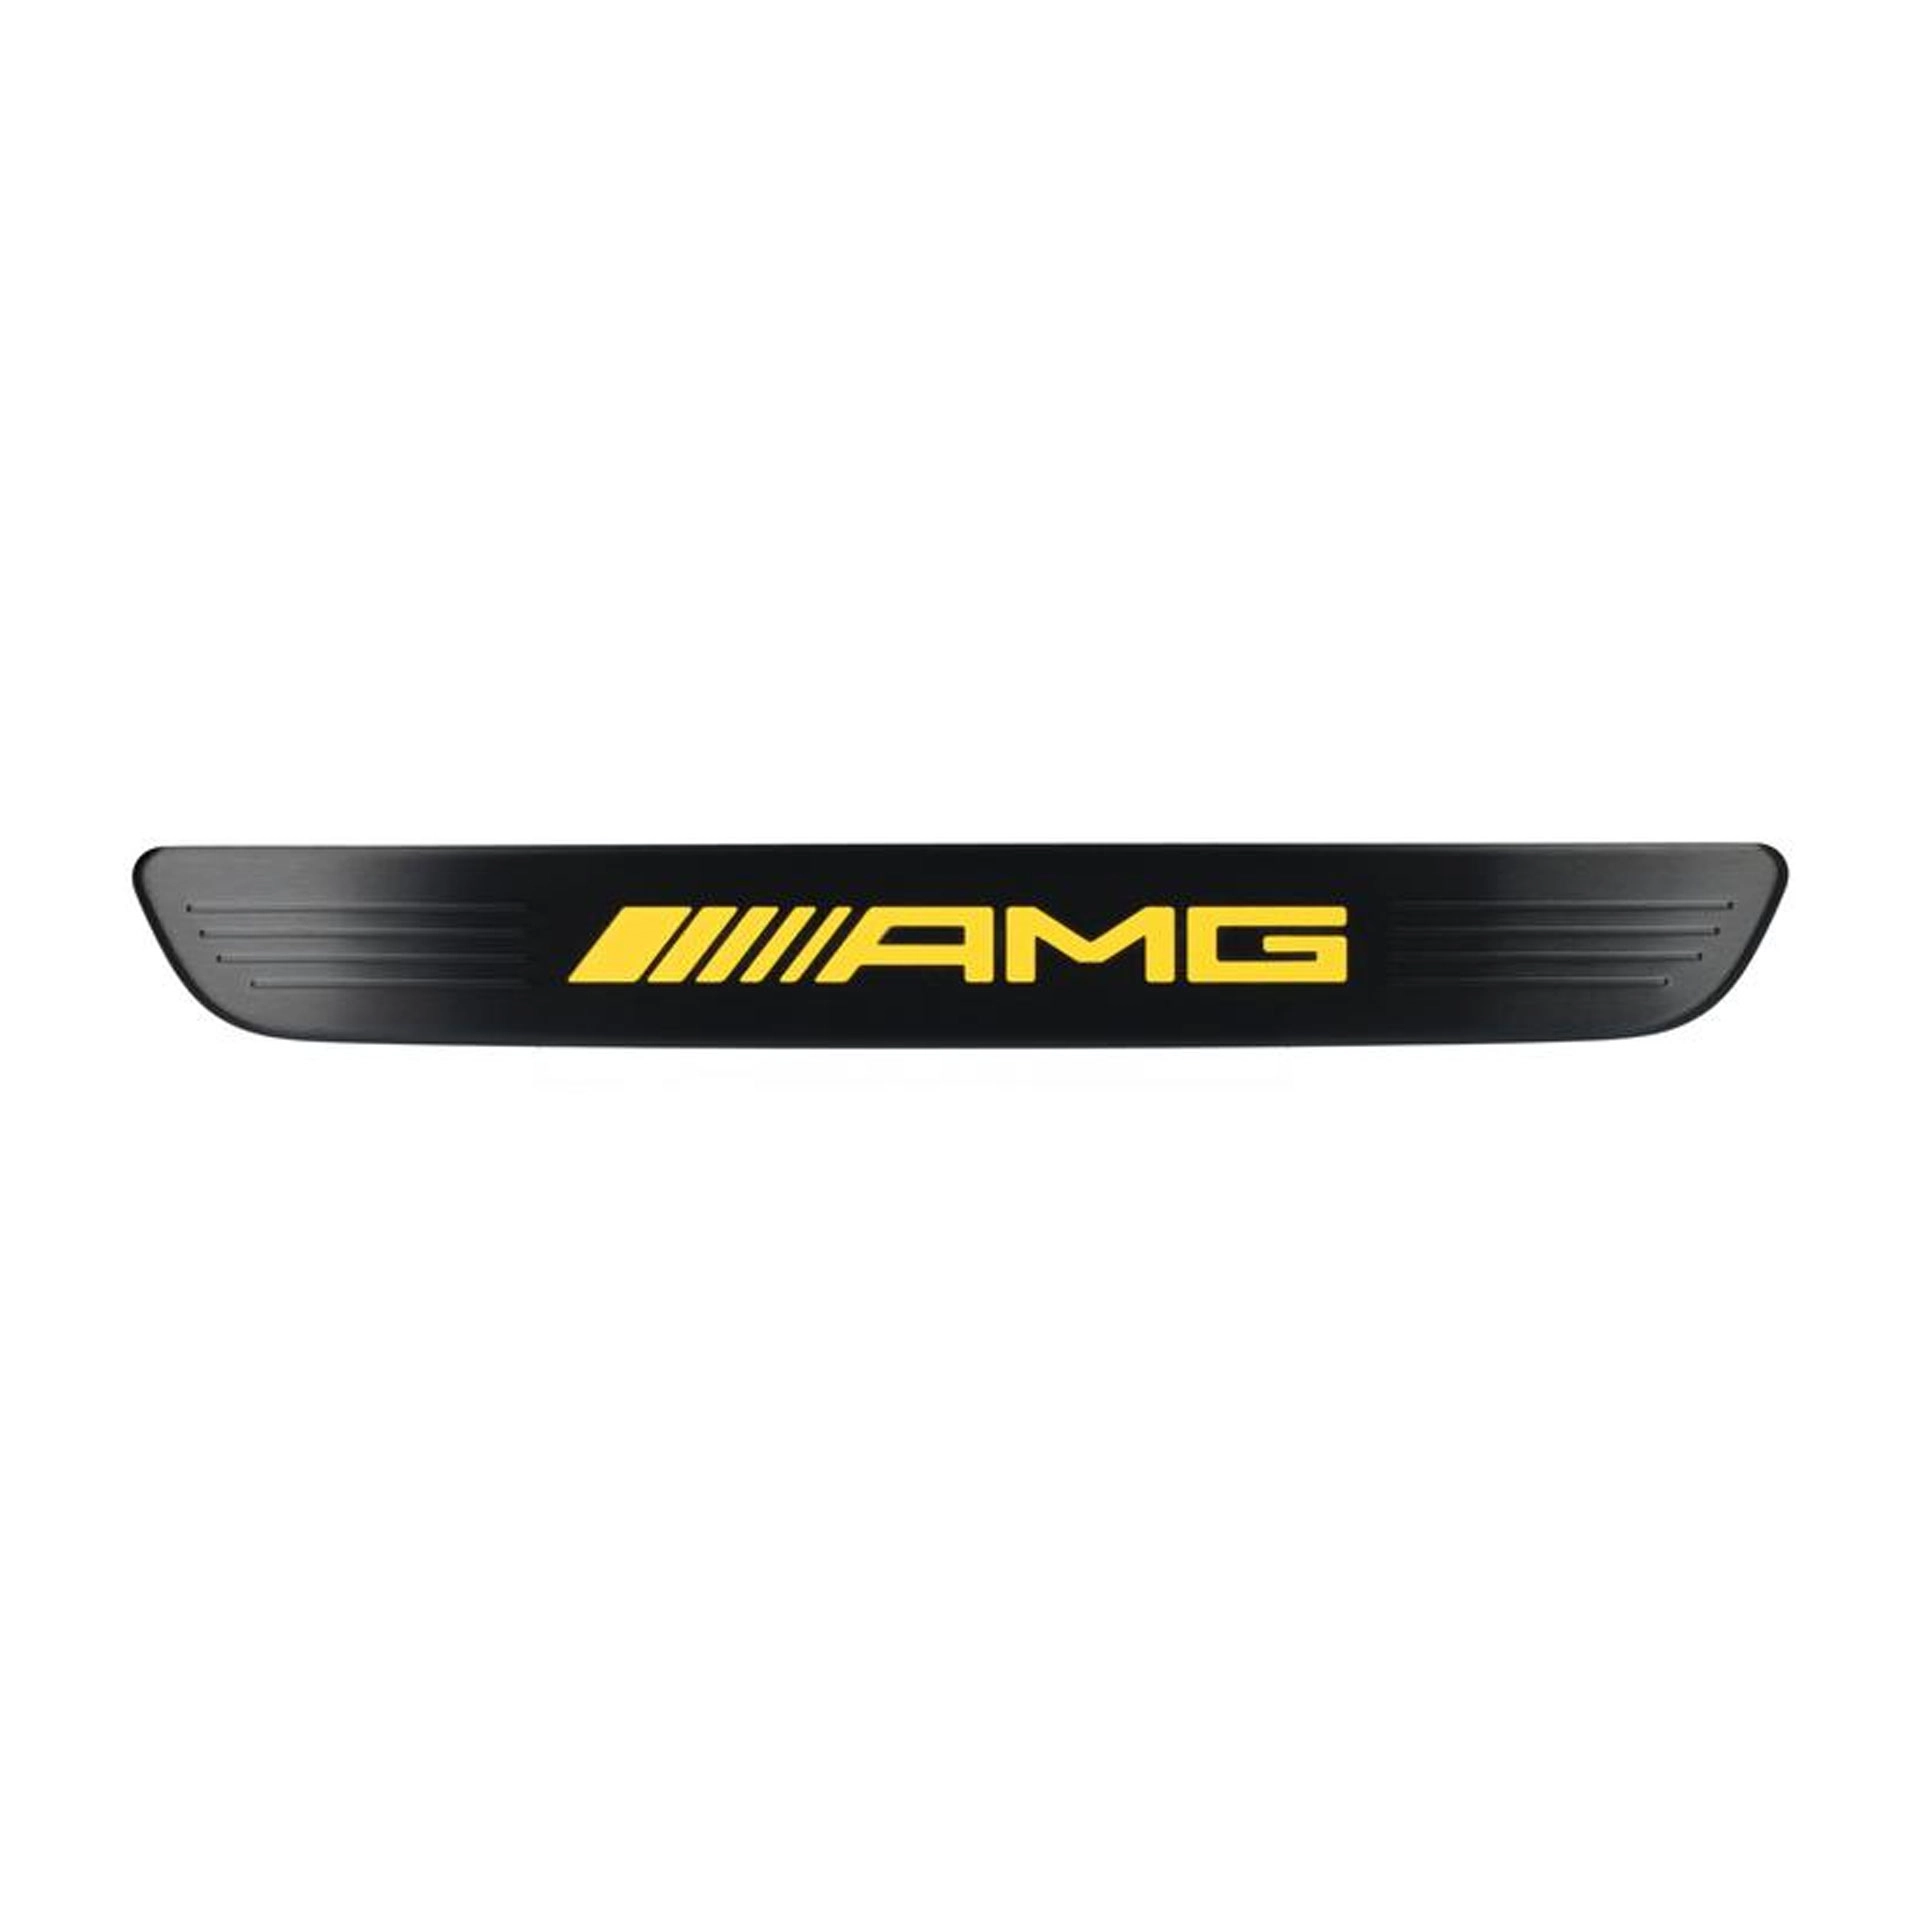 Mercedes-AMG Wechselcover für beleuchtete Einstiegsleisten hinten 2-teilig schwarz/gelb A2236804707